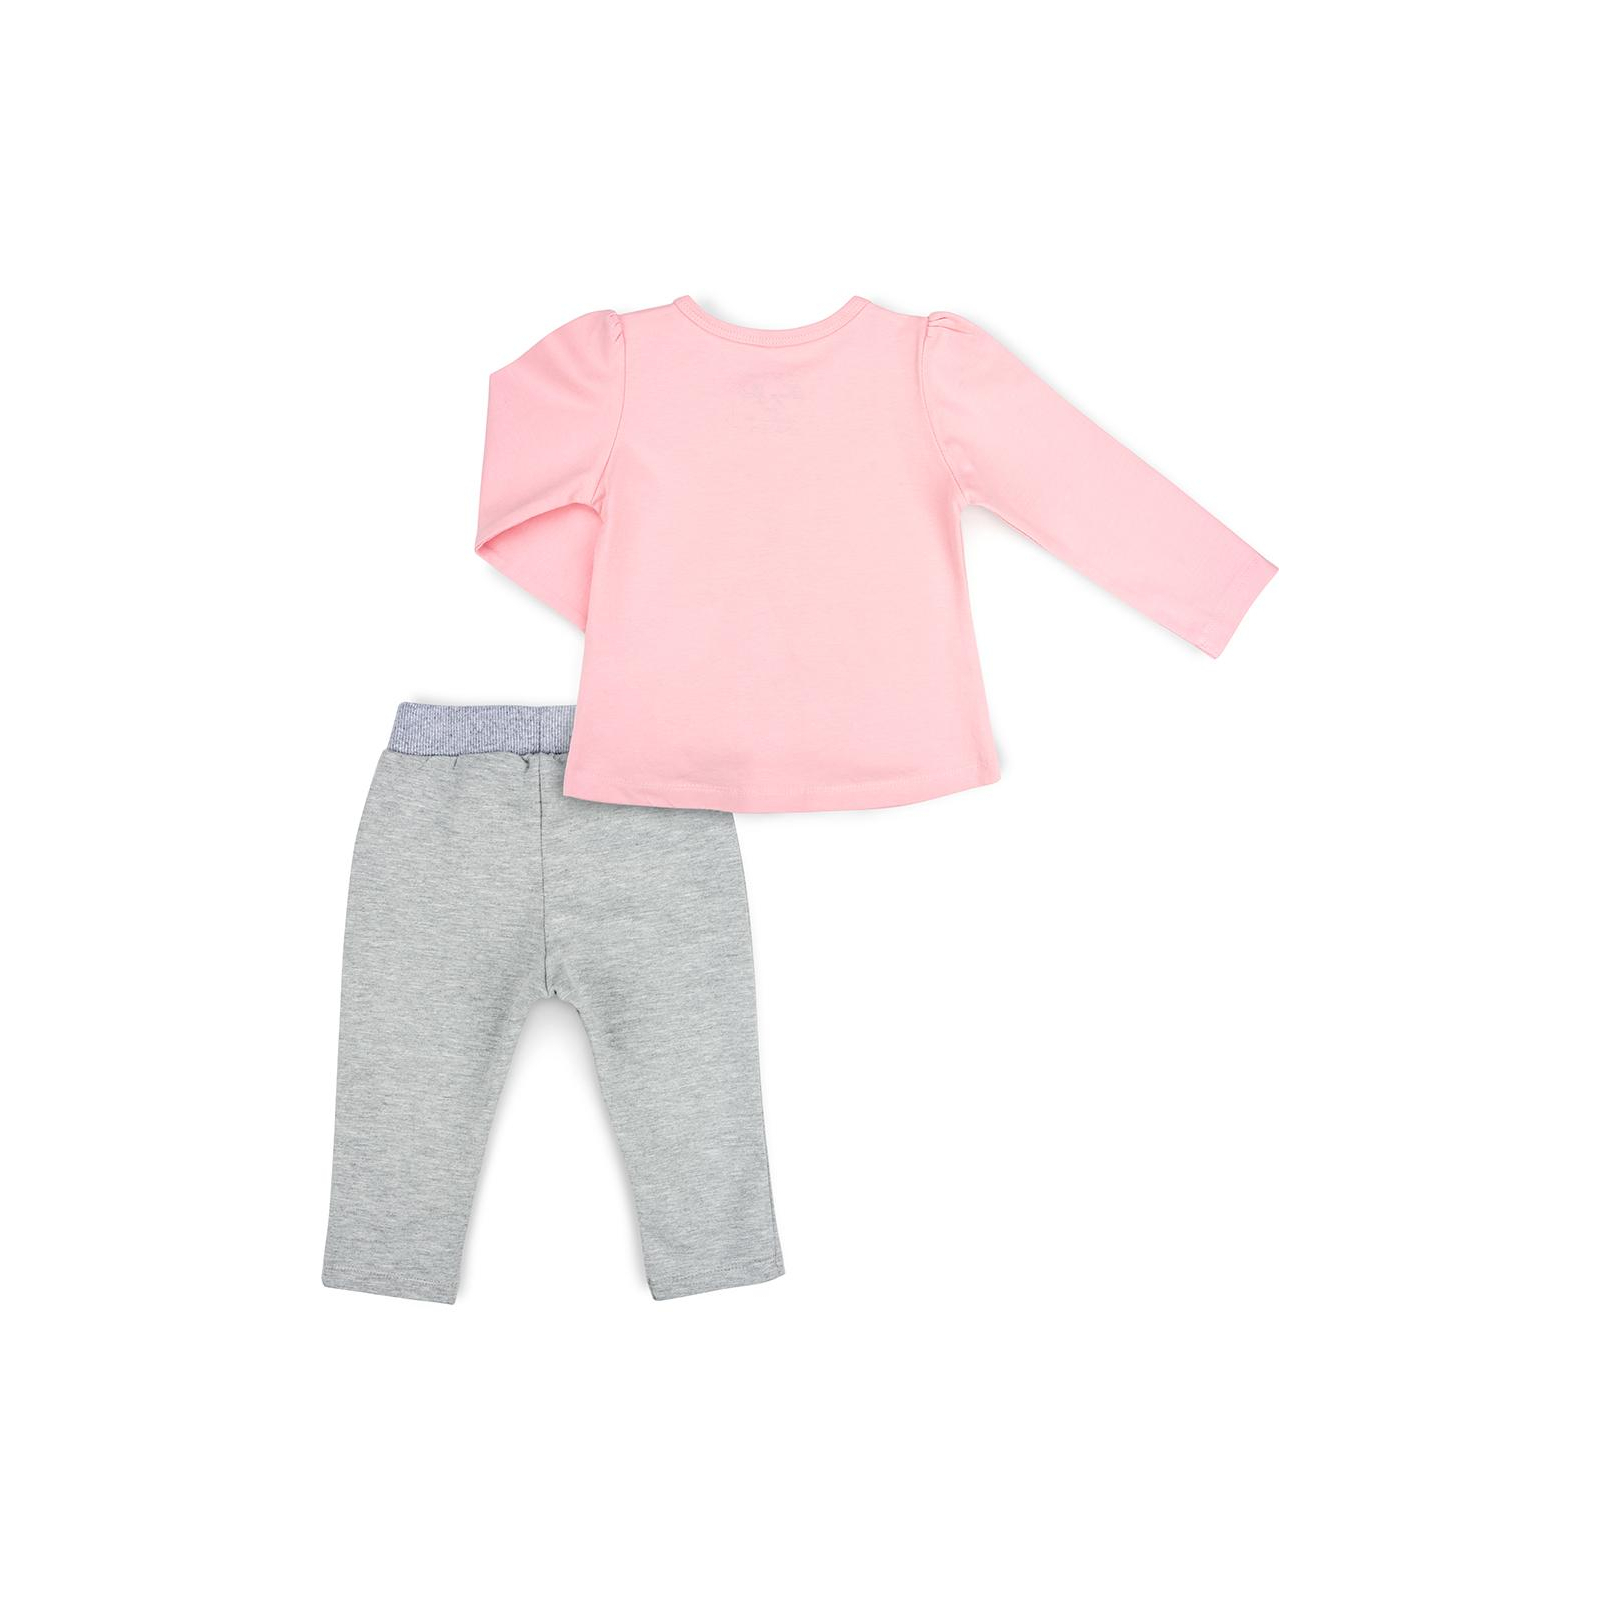 Набор детской одежды Breeze с зайчиком (10038-80G-pinkgray) изображение 4